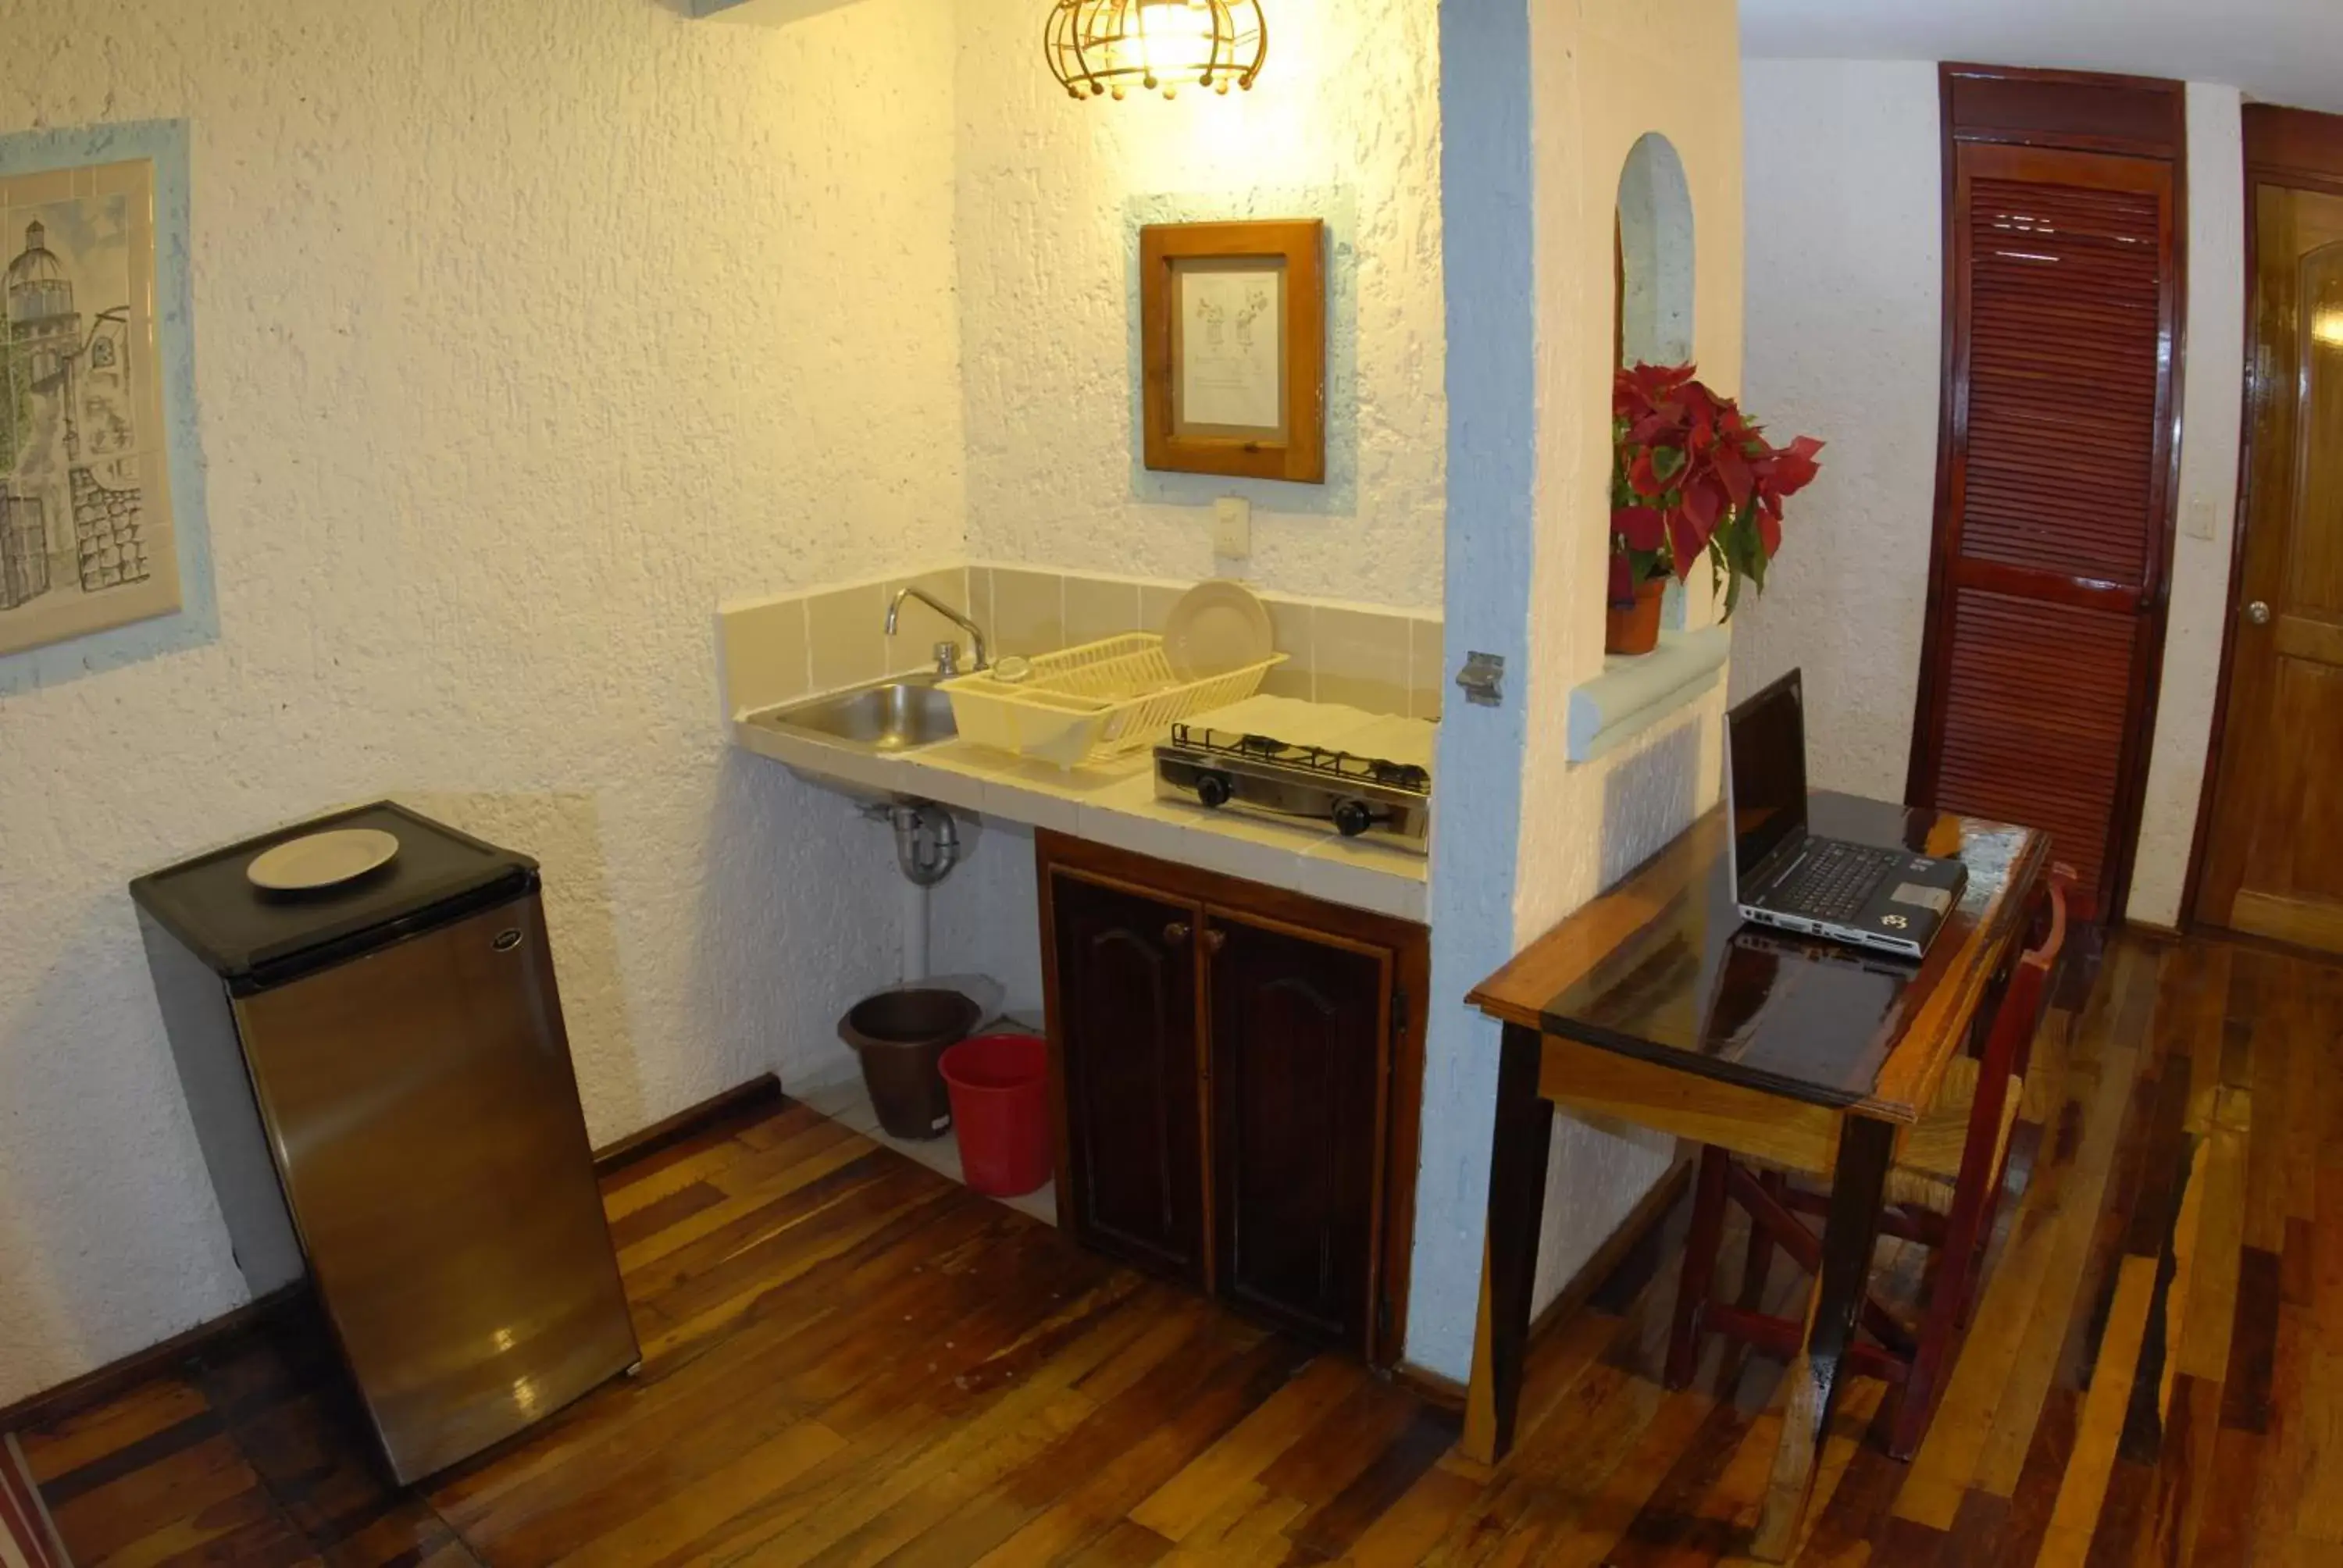 Kitchen or kitchenette, Kitchen/Kitchenette in Eco-hotel El Rey del Caribe